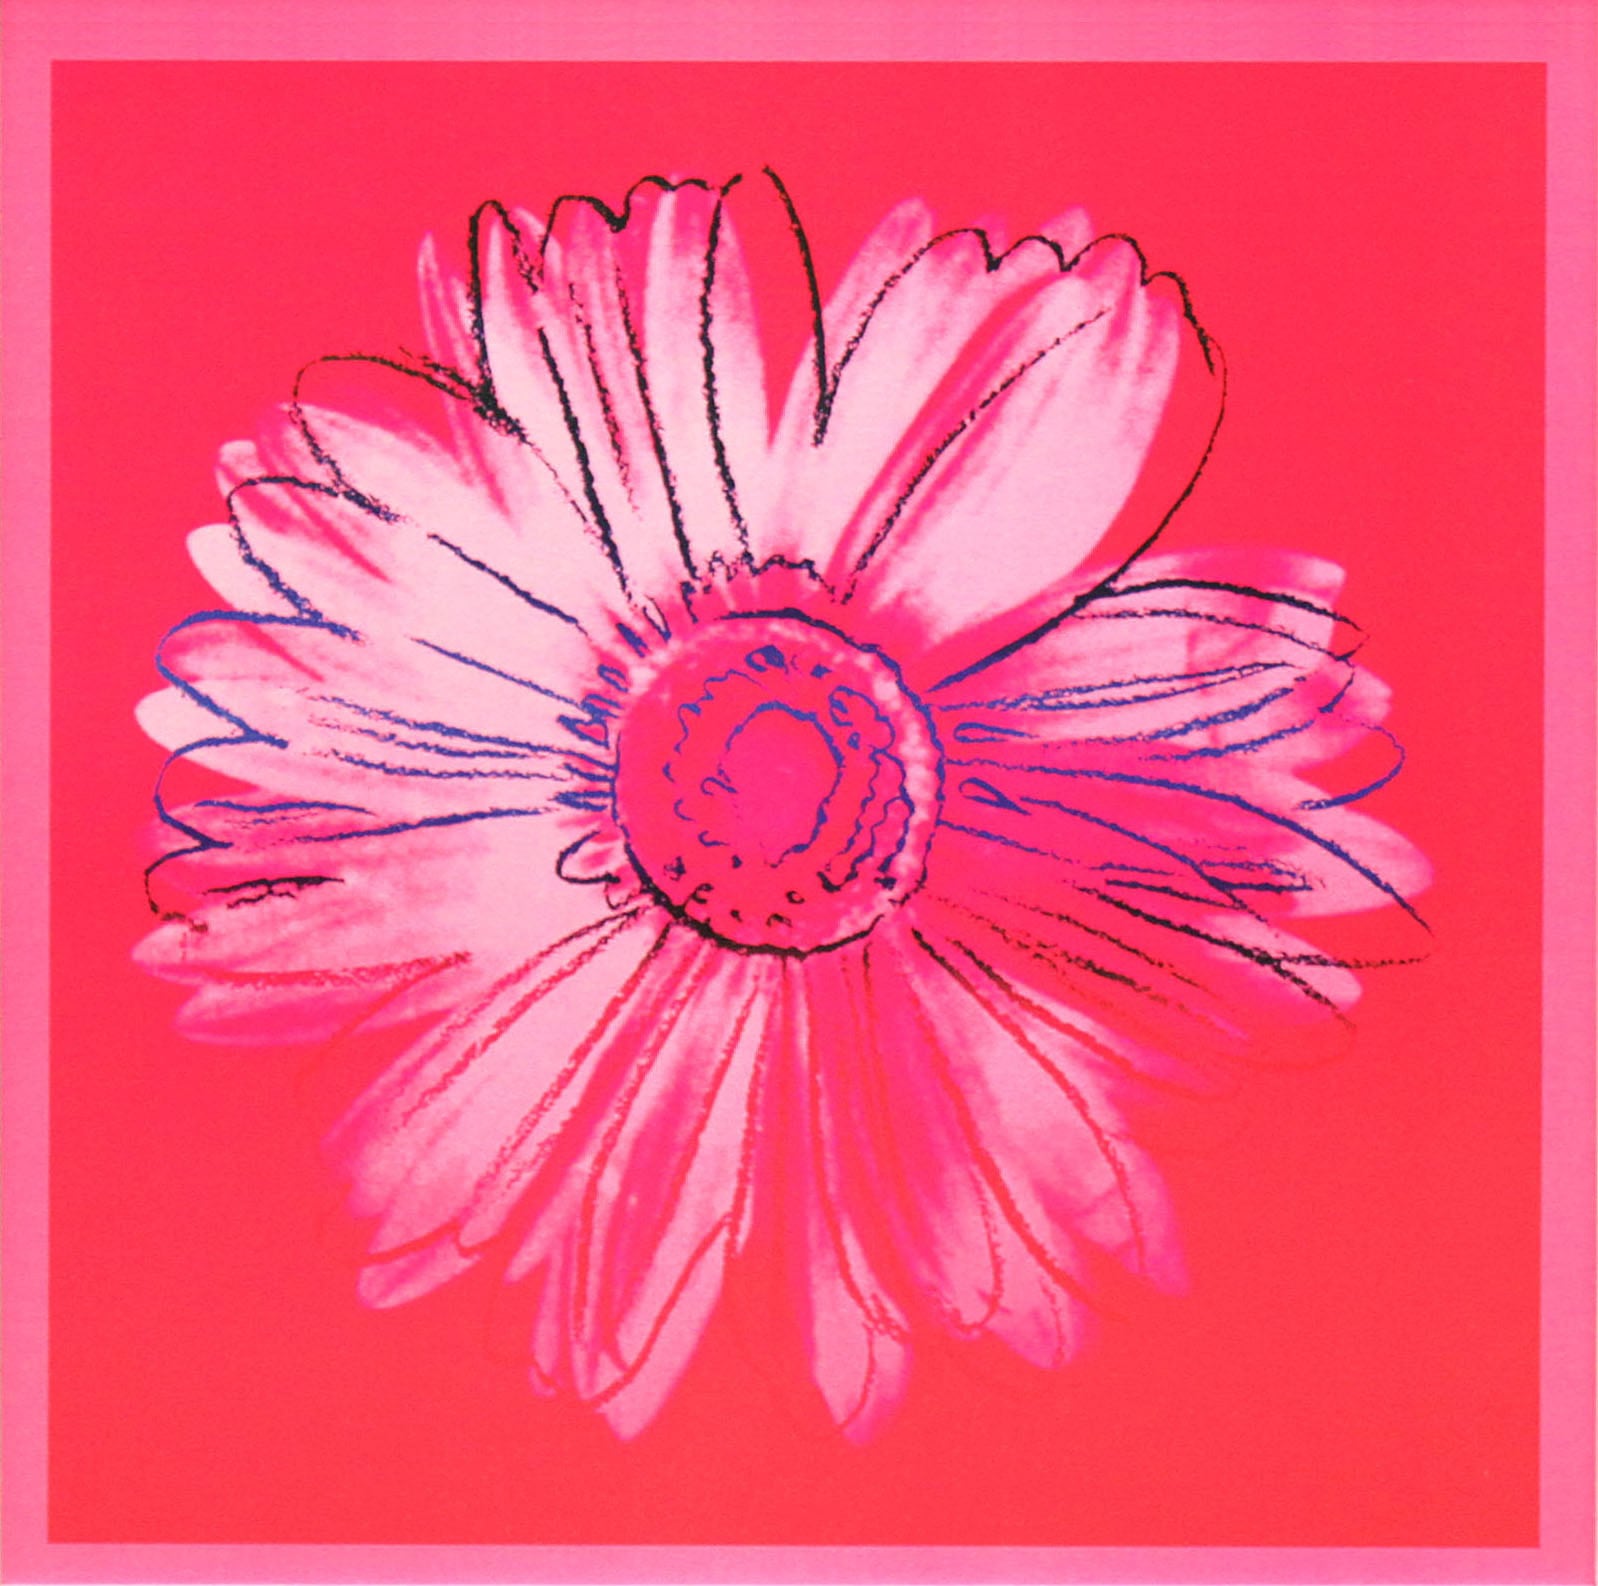 アンディ・ウォーホル「デイジー(クリムゾン&ピンク)Daisy,c 1982」展示用フック付大型サイズジークレ ポップアート 絵画 Andy Warhol